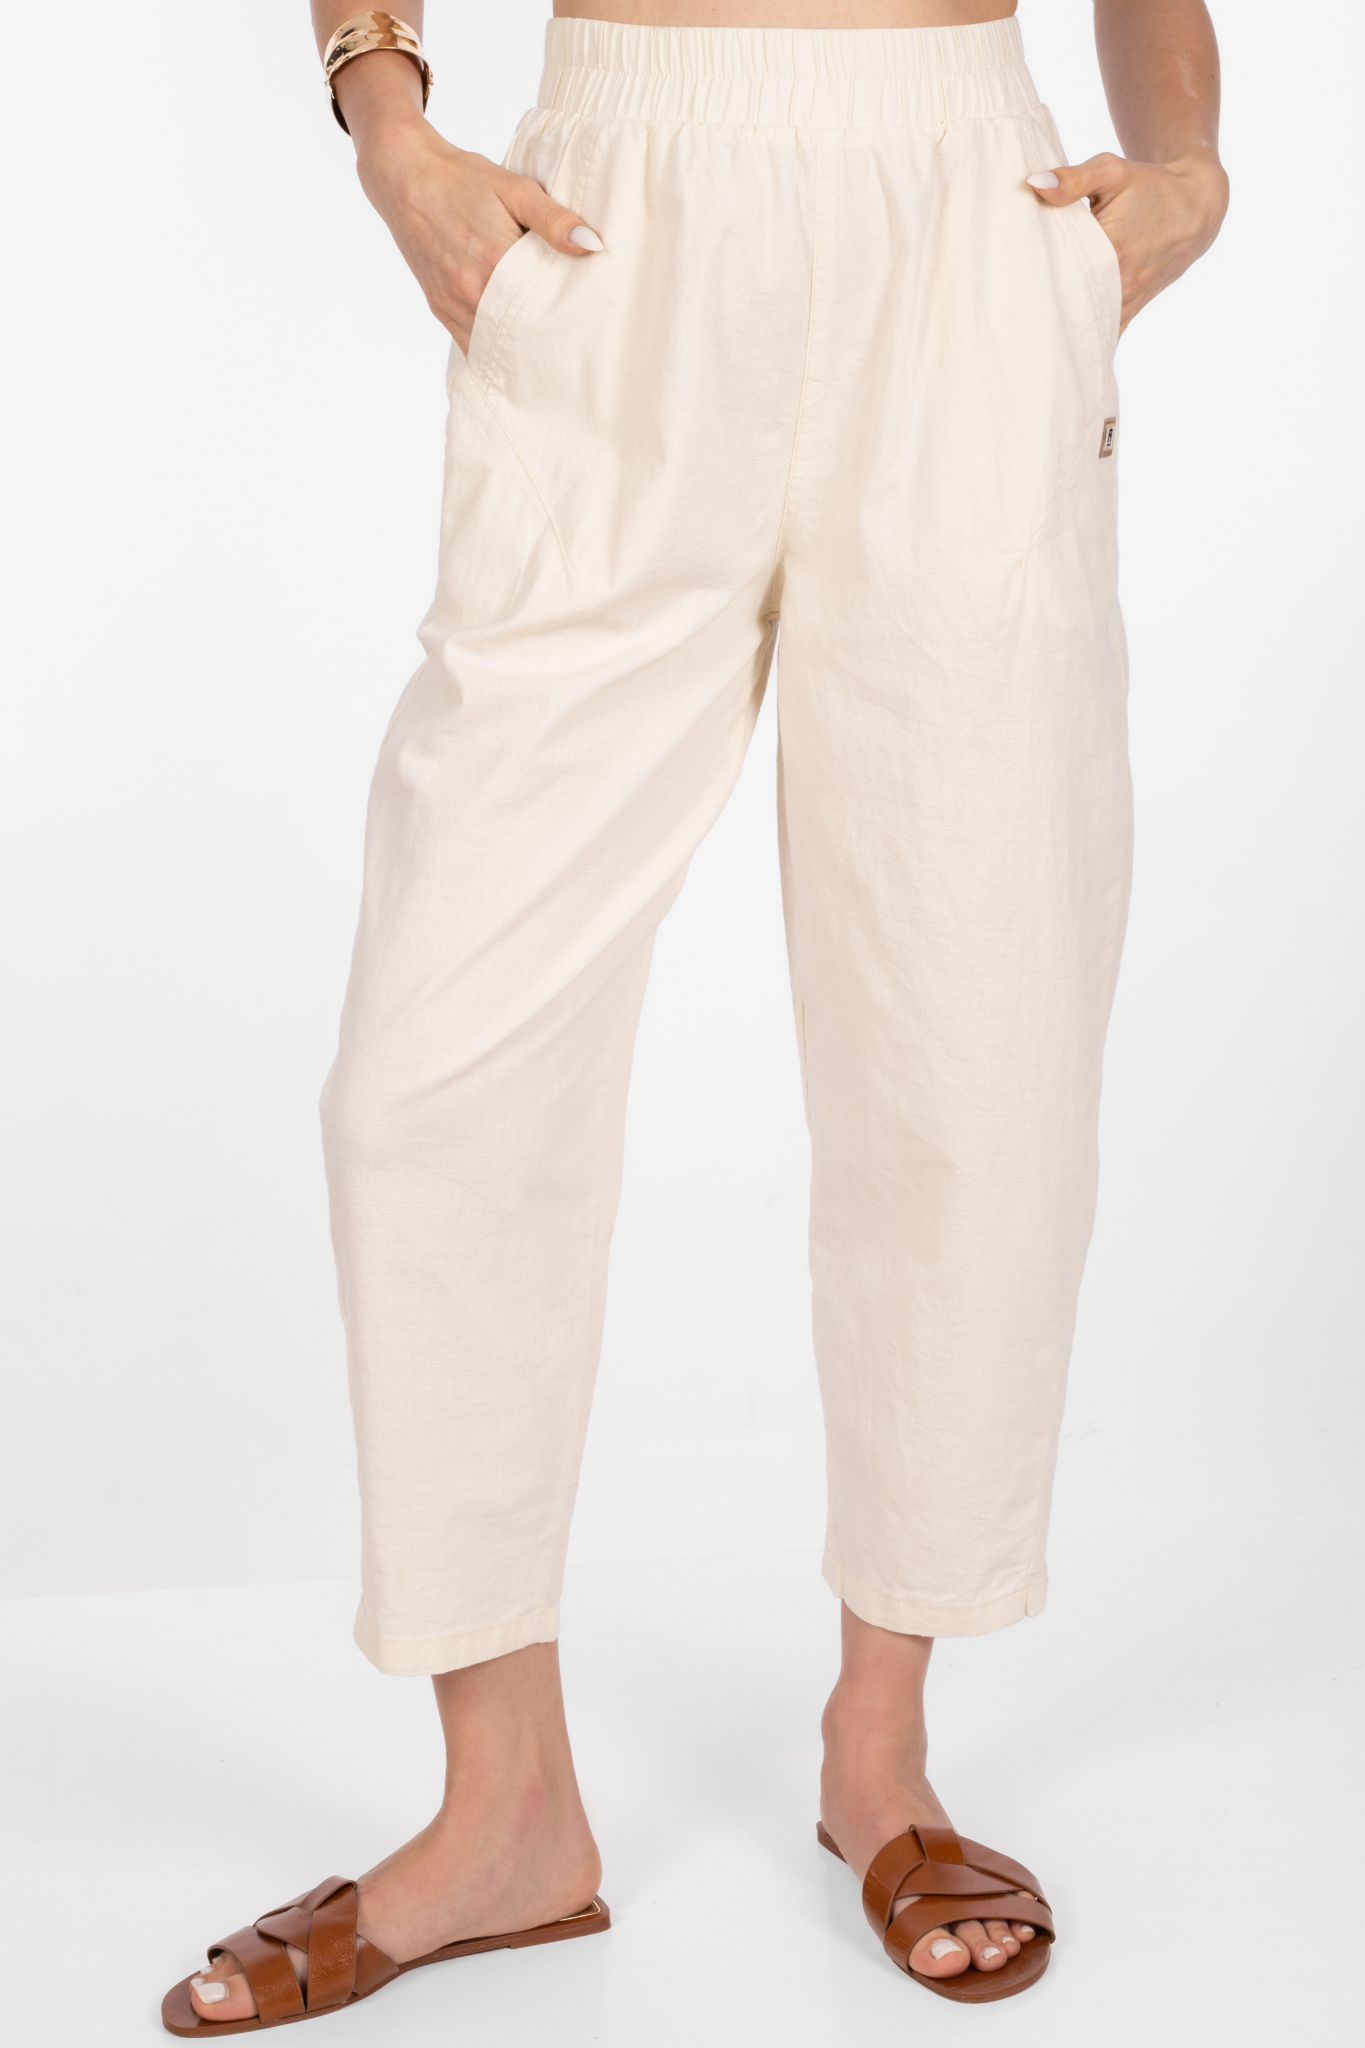 Дамски панталон от памук в цвят екрю с ластик в талията